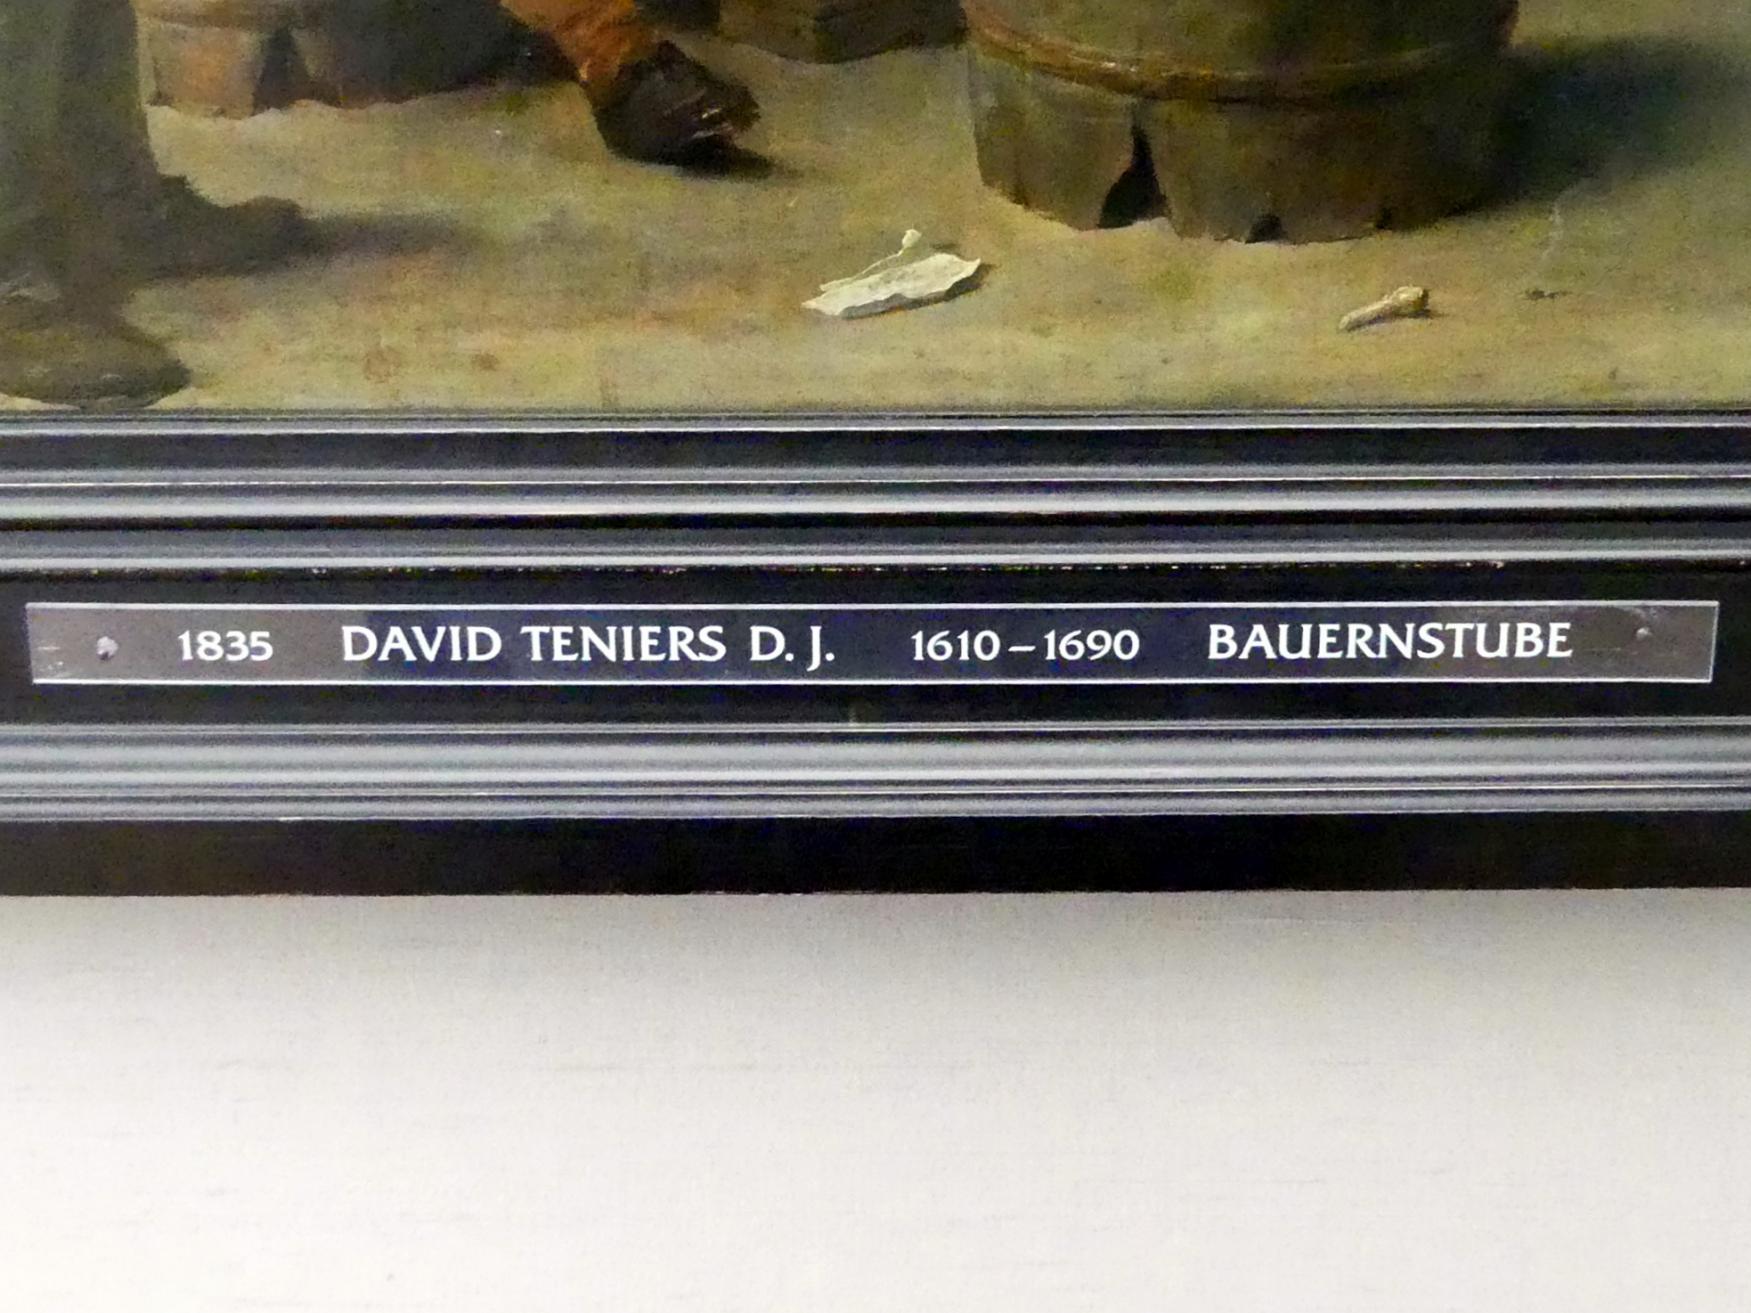 David Teniers der Jüngere (1633–1682), Bauernstube, München, Alte Pinakothek, Obergeschoss Kabinett 10, um 1635, Bild 2/2